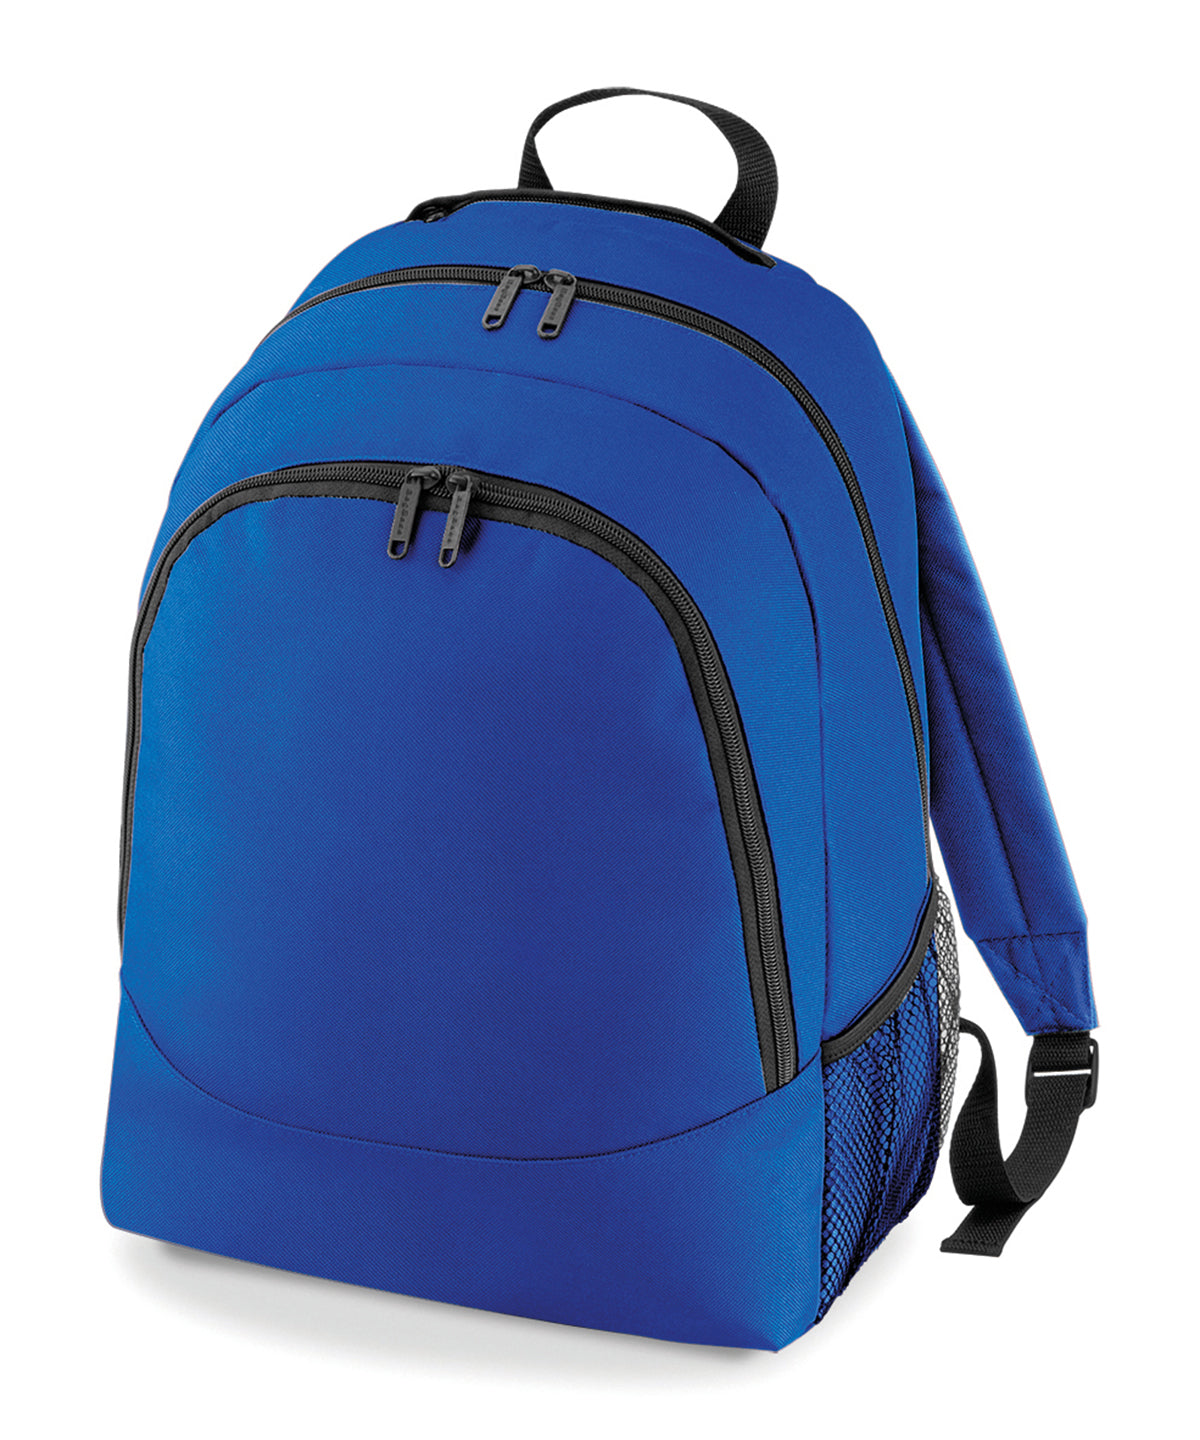 Personalised Bags - Royal Bagbase Universal backpack